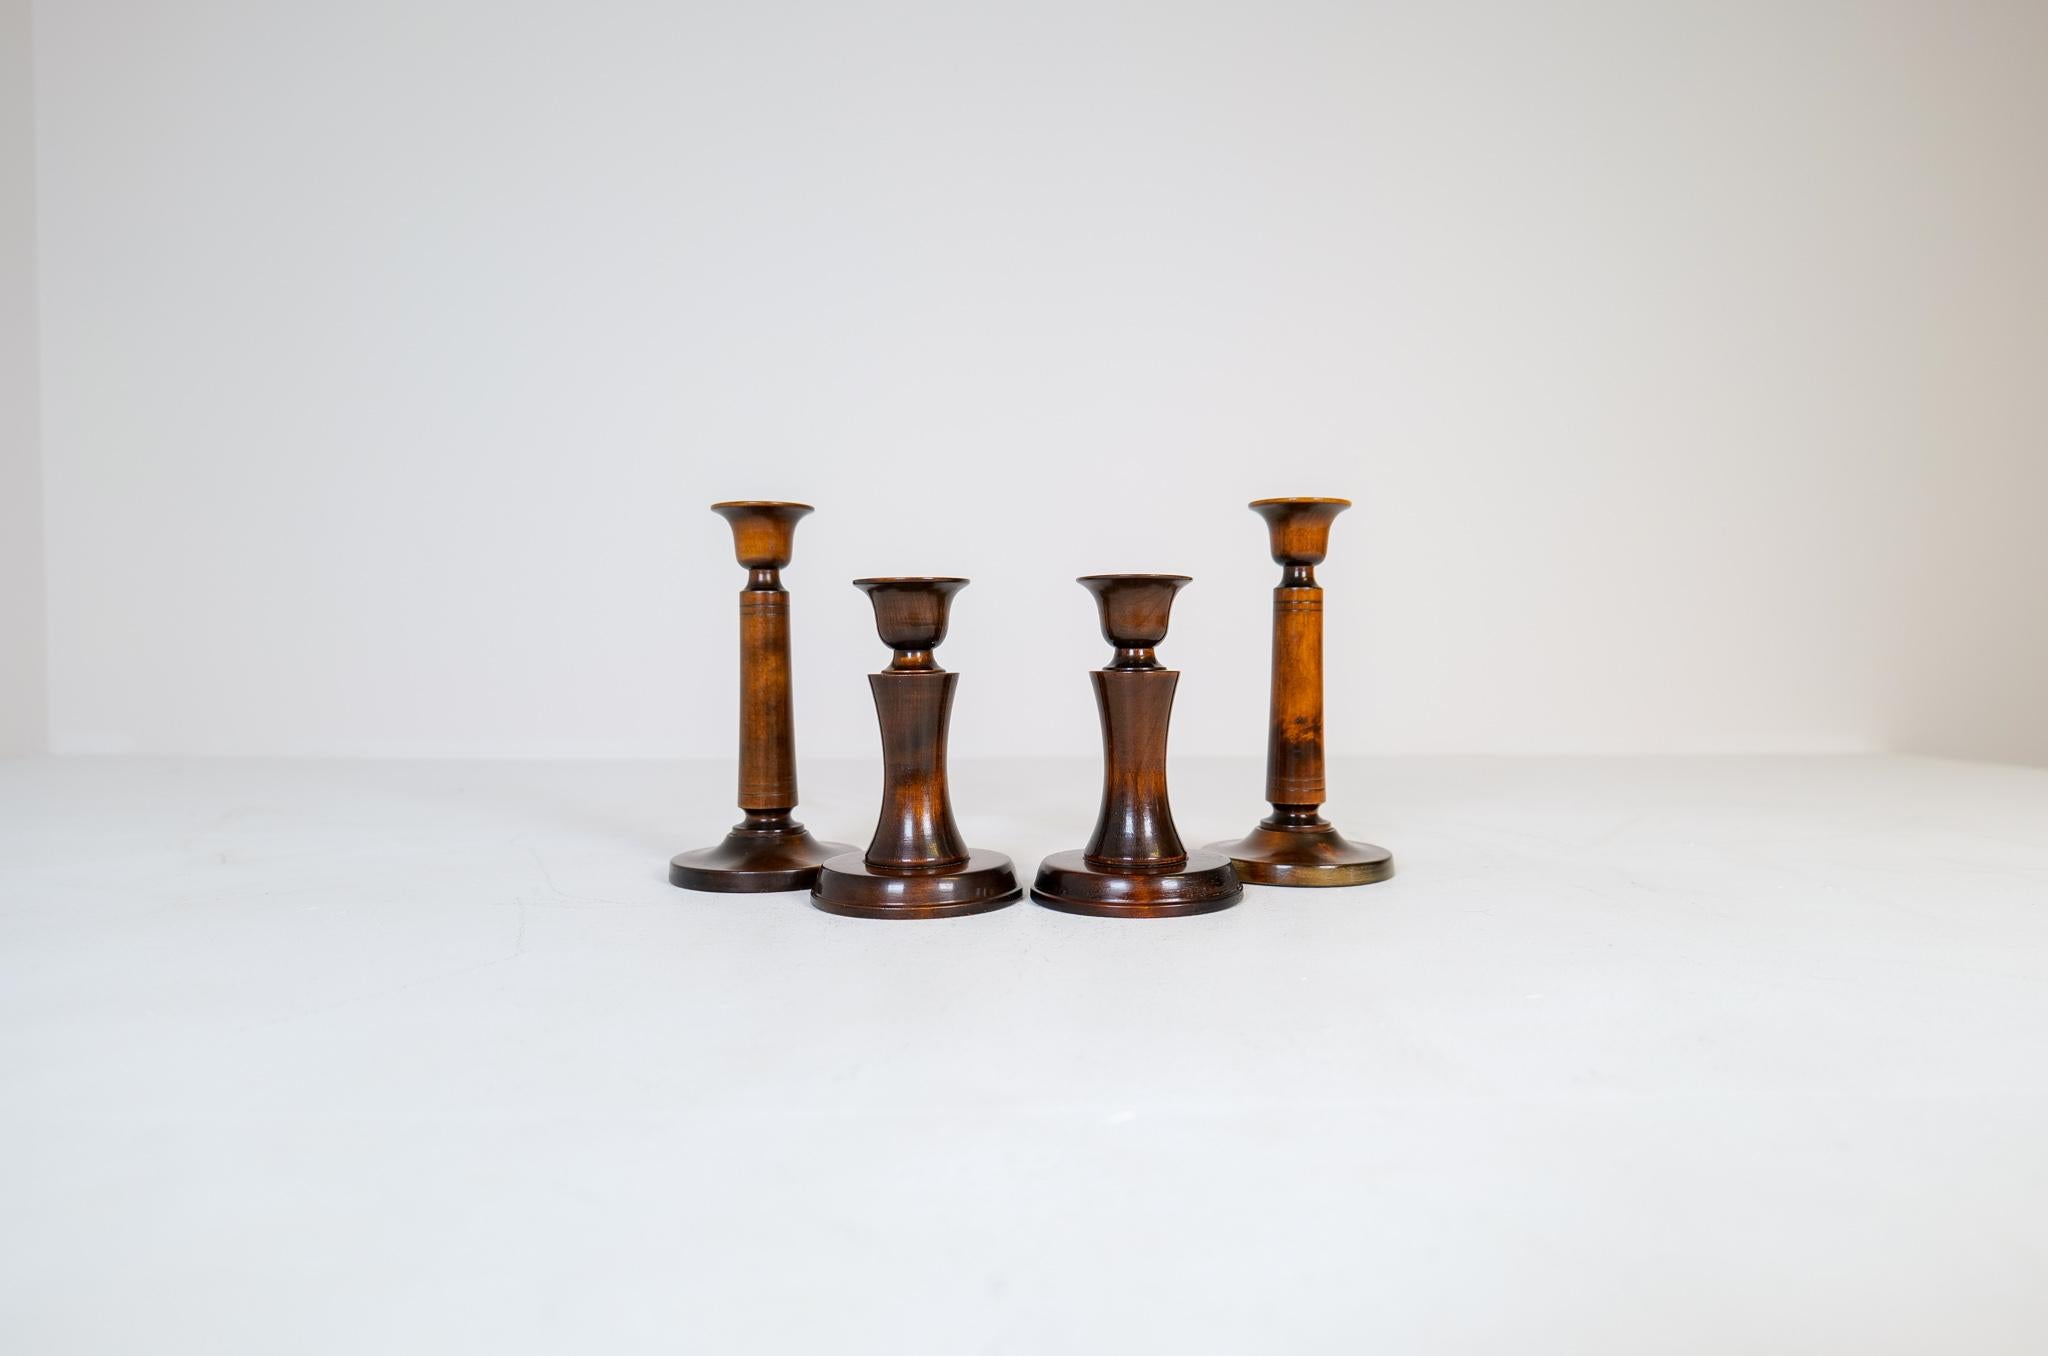 Set mit 4 Kerzenleuchtern, entworfen von dem berühmten Carlm Malmsten. Diese bescheidenen, aber sehr gut verarbeiteten Kerzenständer aus lackierter Birke wurden in den 1960er Jahren in Schweden hergestellt. 

Guter Vintage-Zustand, der Lack hat